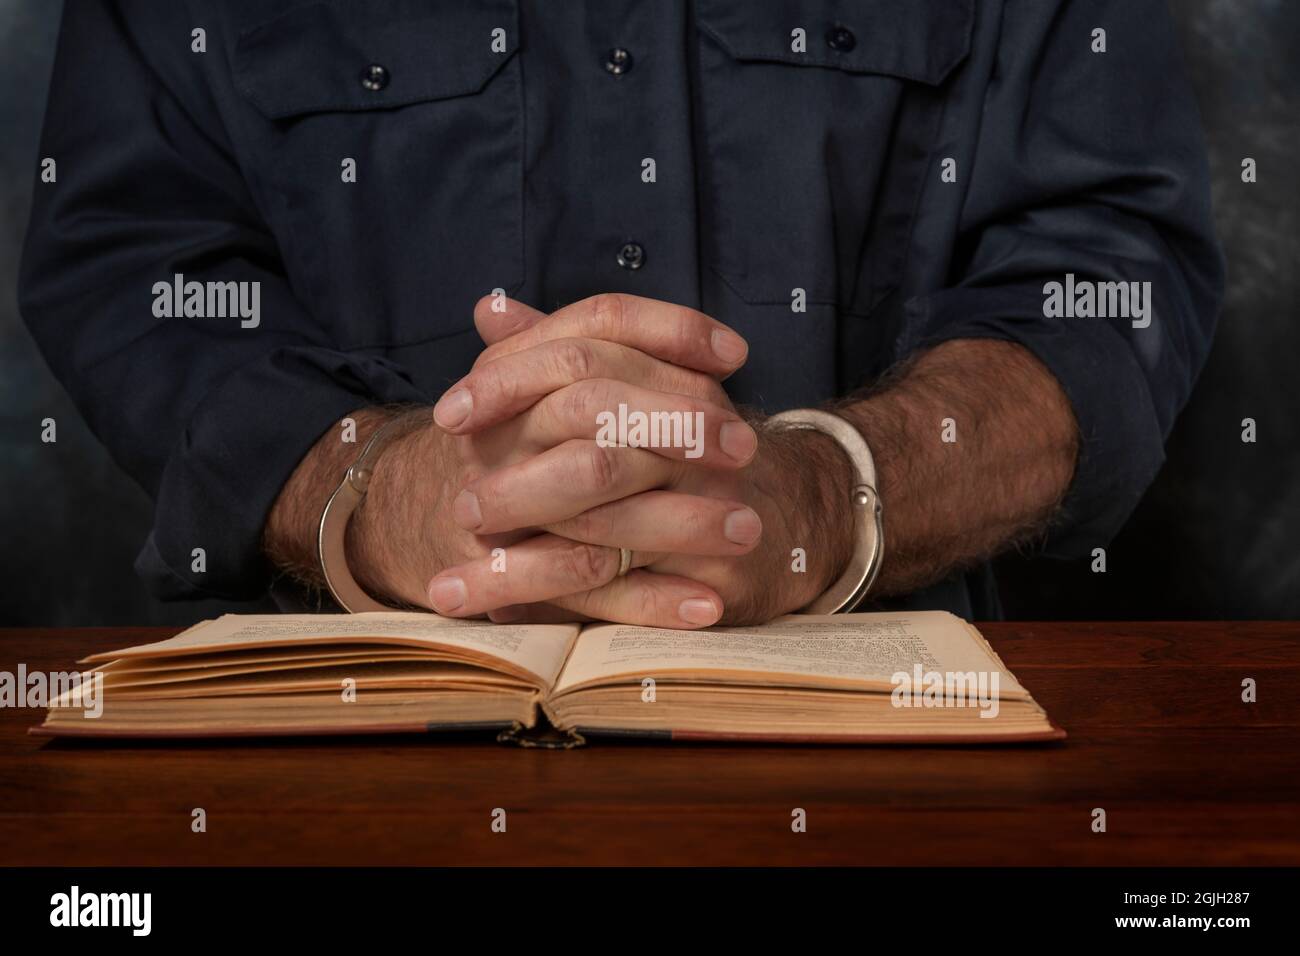 Ein verhaftete, mit Handschellen gefesselte Mann liest ein Buch über das Gesetz, in der Hoffnung, einen Weg zu finden, sich zu verteidigen. Stockfoto